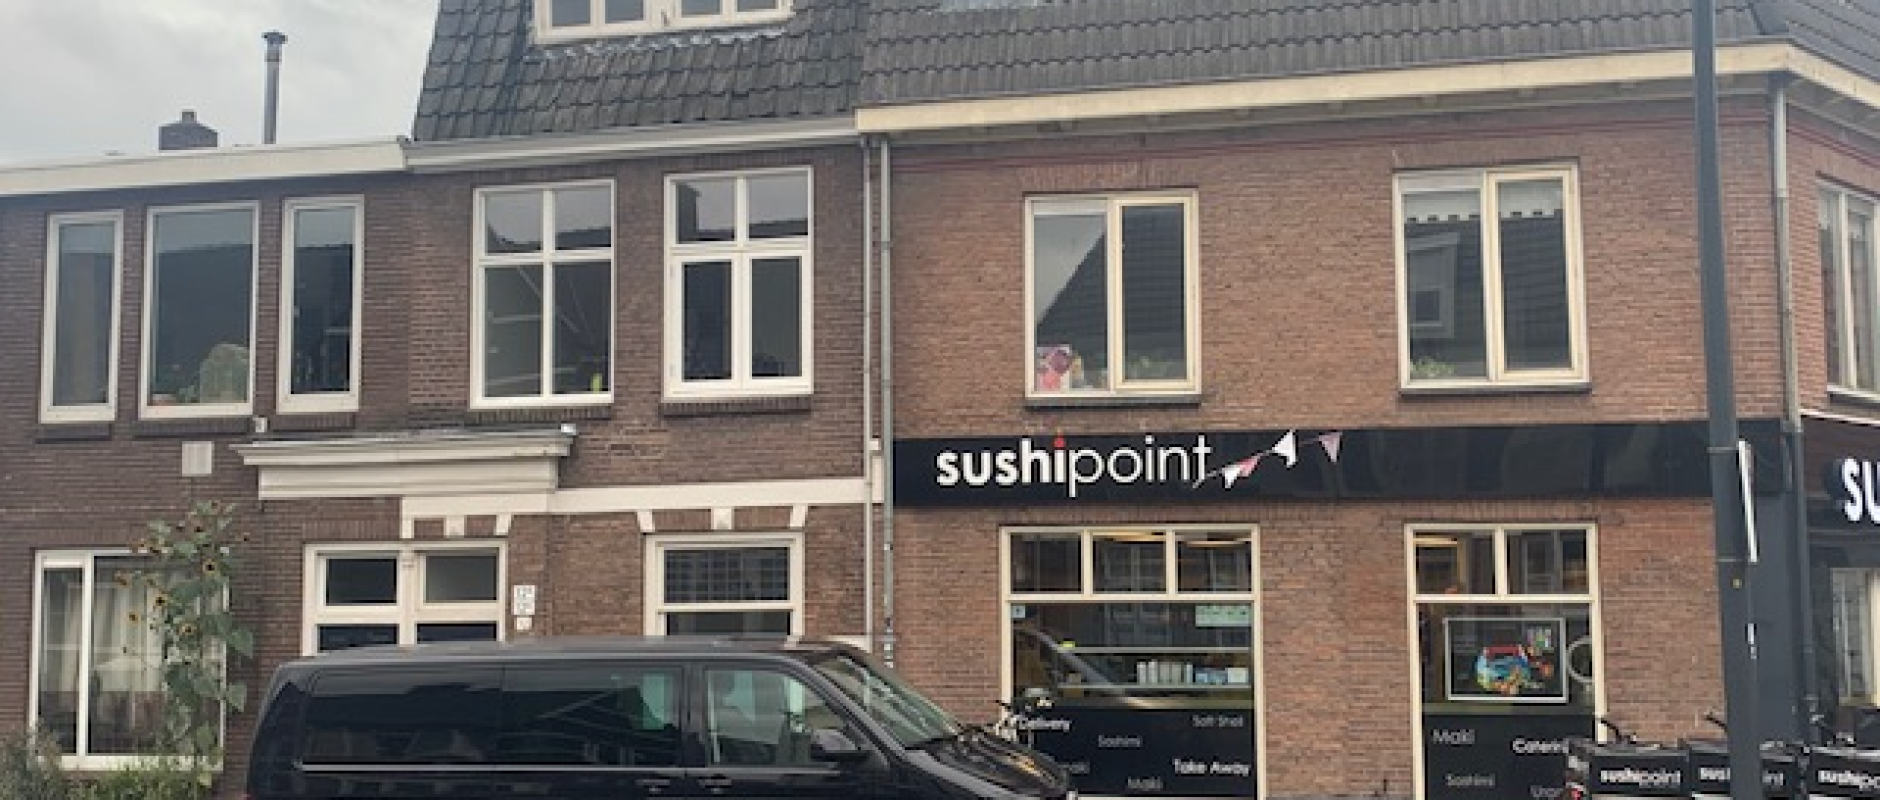 Woning te koop aan de Assendorperstraat 12A te Zwolle